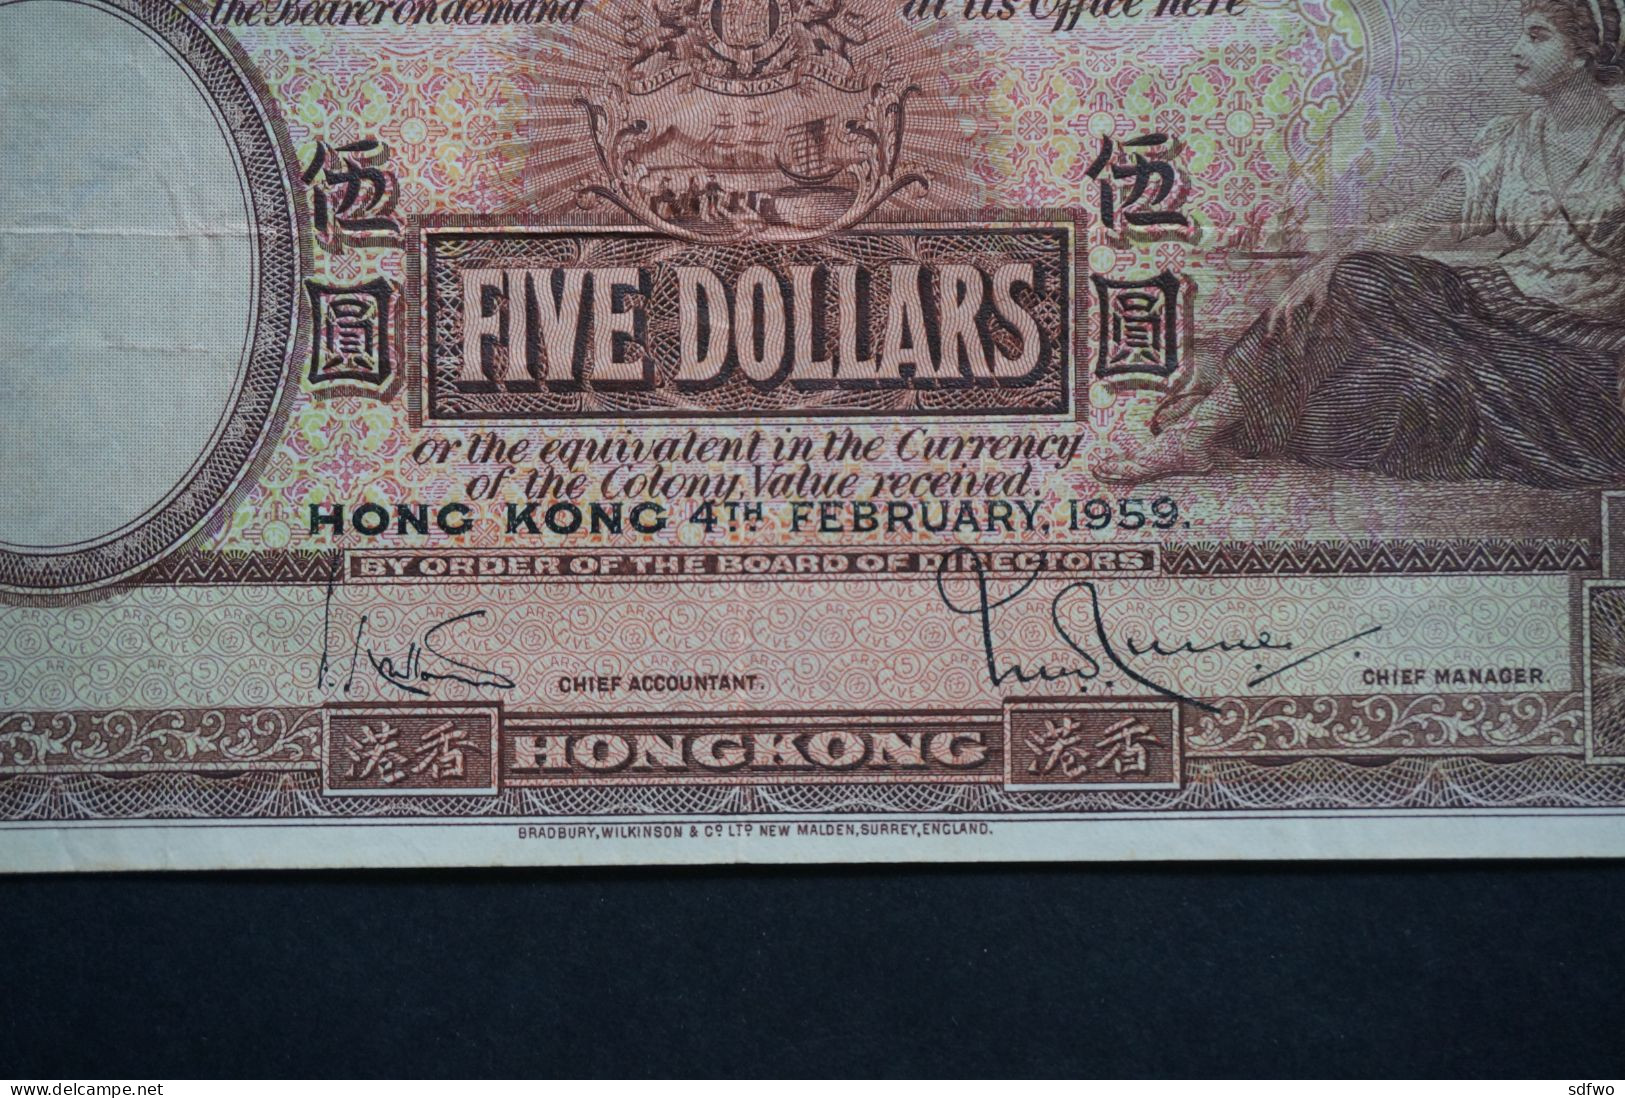 (Tv) 1959 HONG KONG OLD ISSUE - HSBC BANKNOTE 5 DOLLARS #M/H 503,623 - Hong Kong